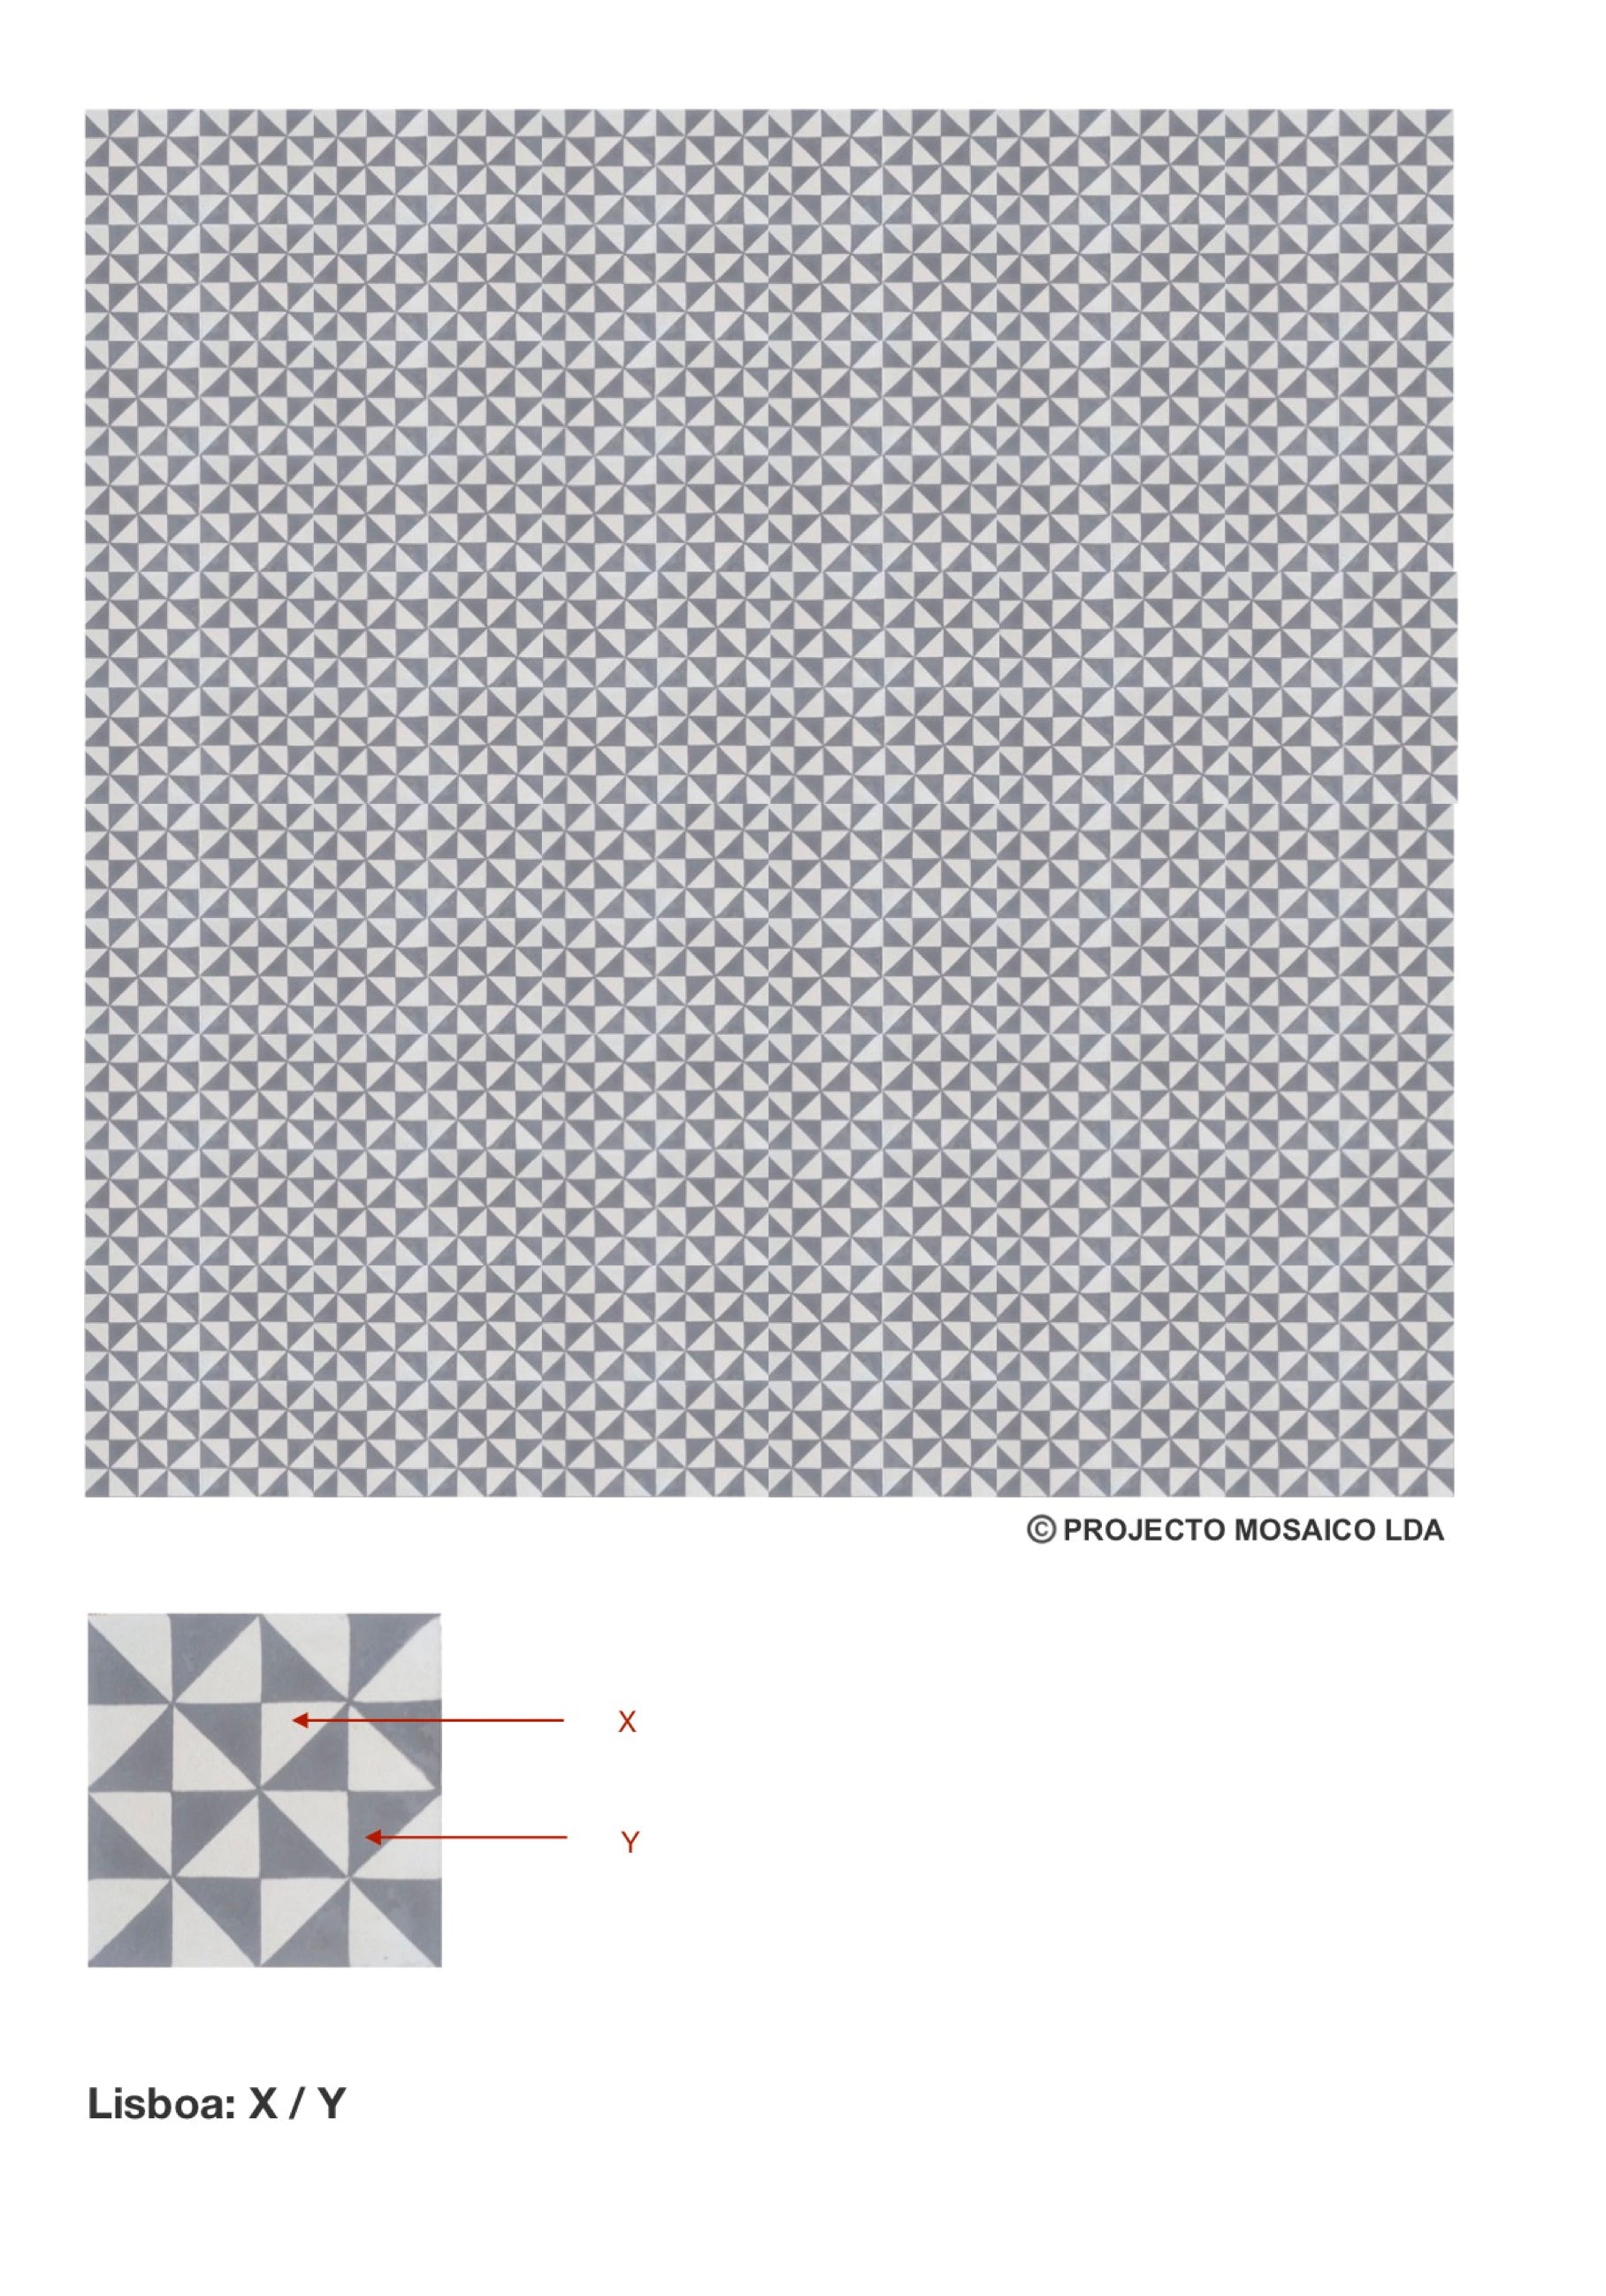 illustração de aplicação do mosaico hidráulico ref: Lisboa P 2C